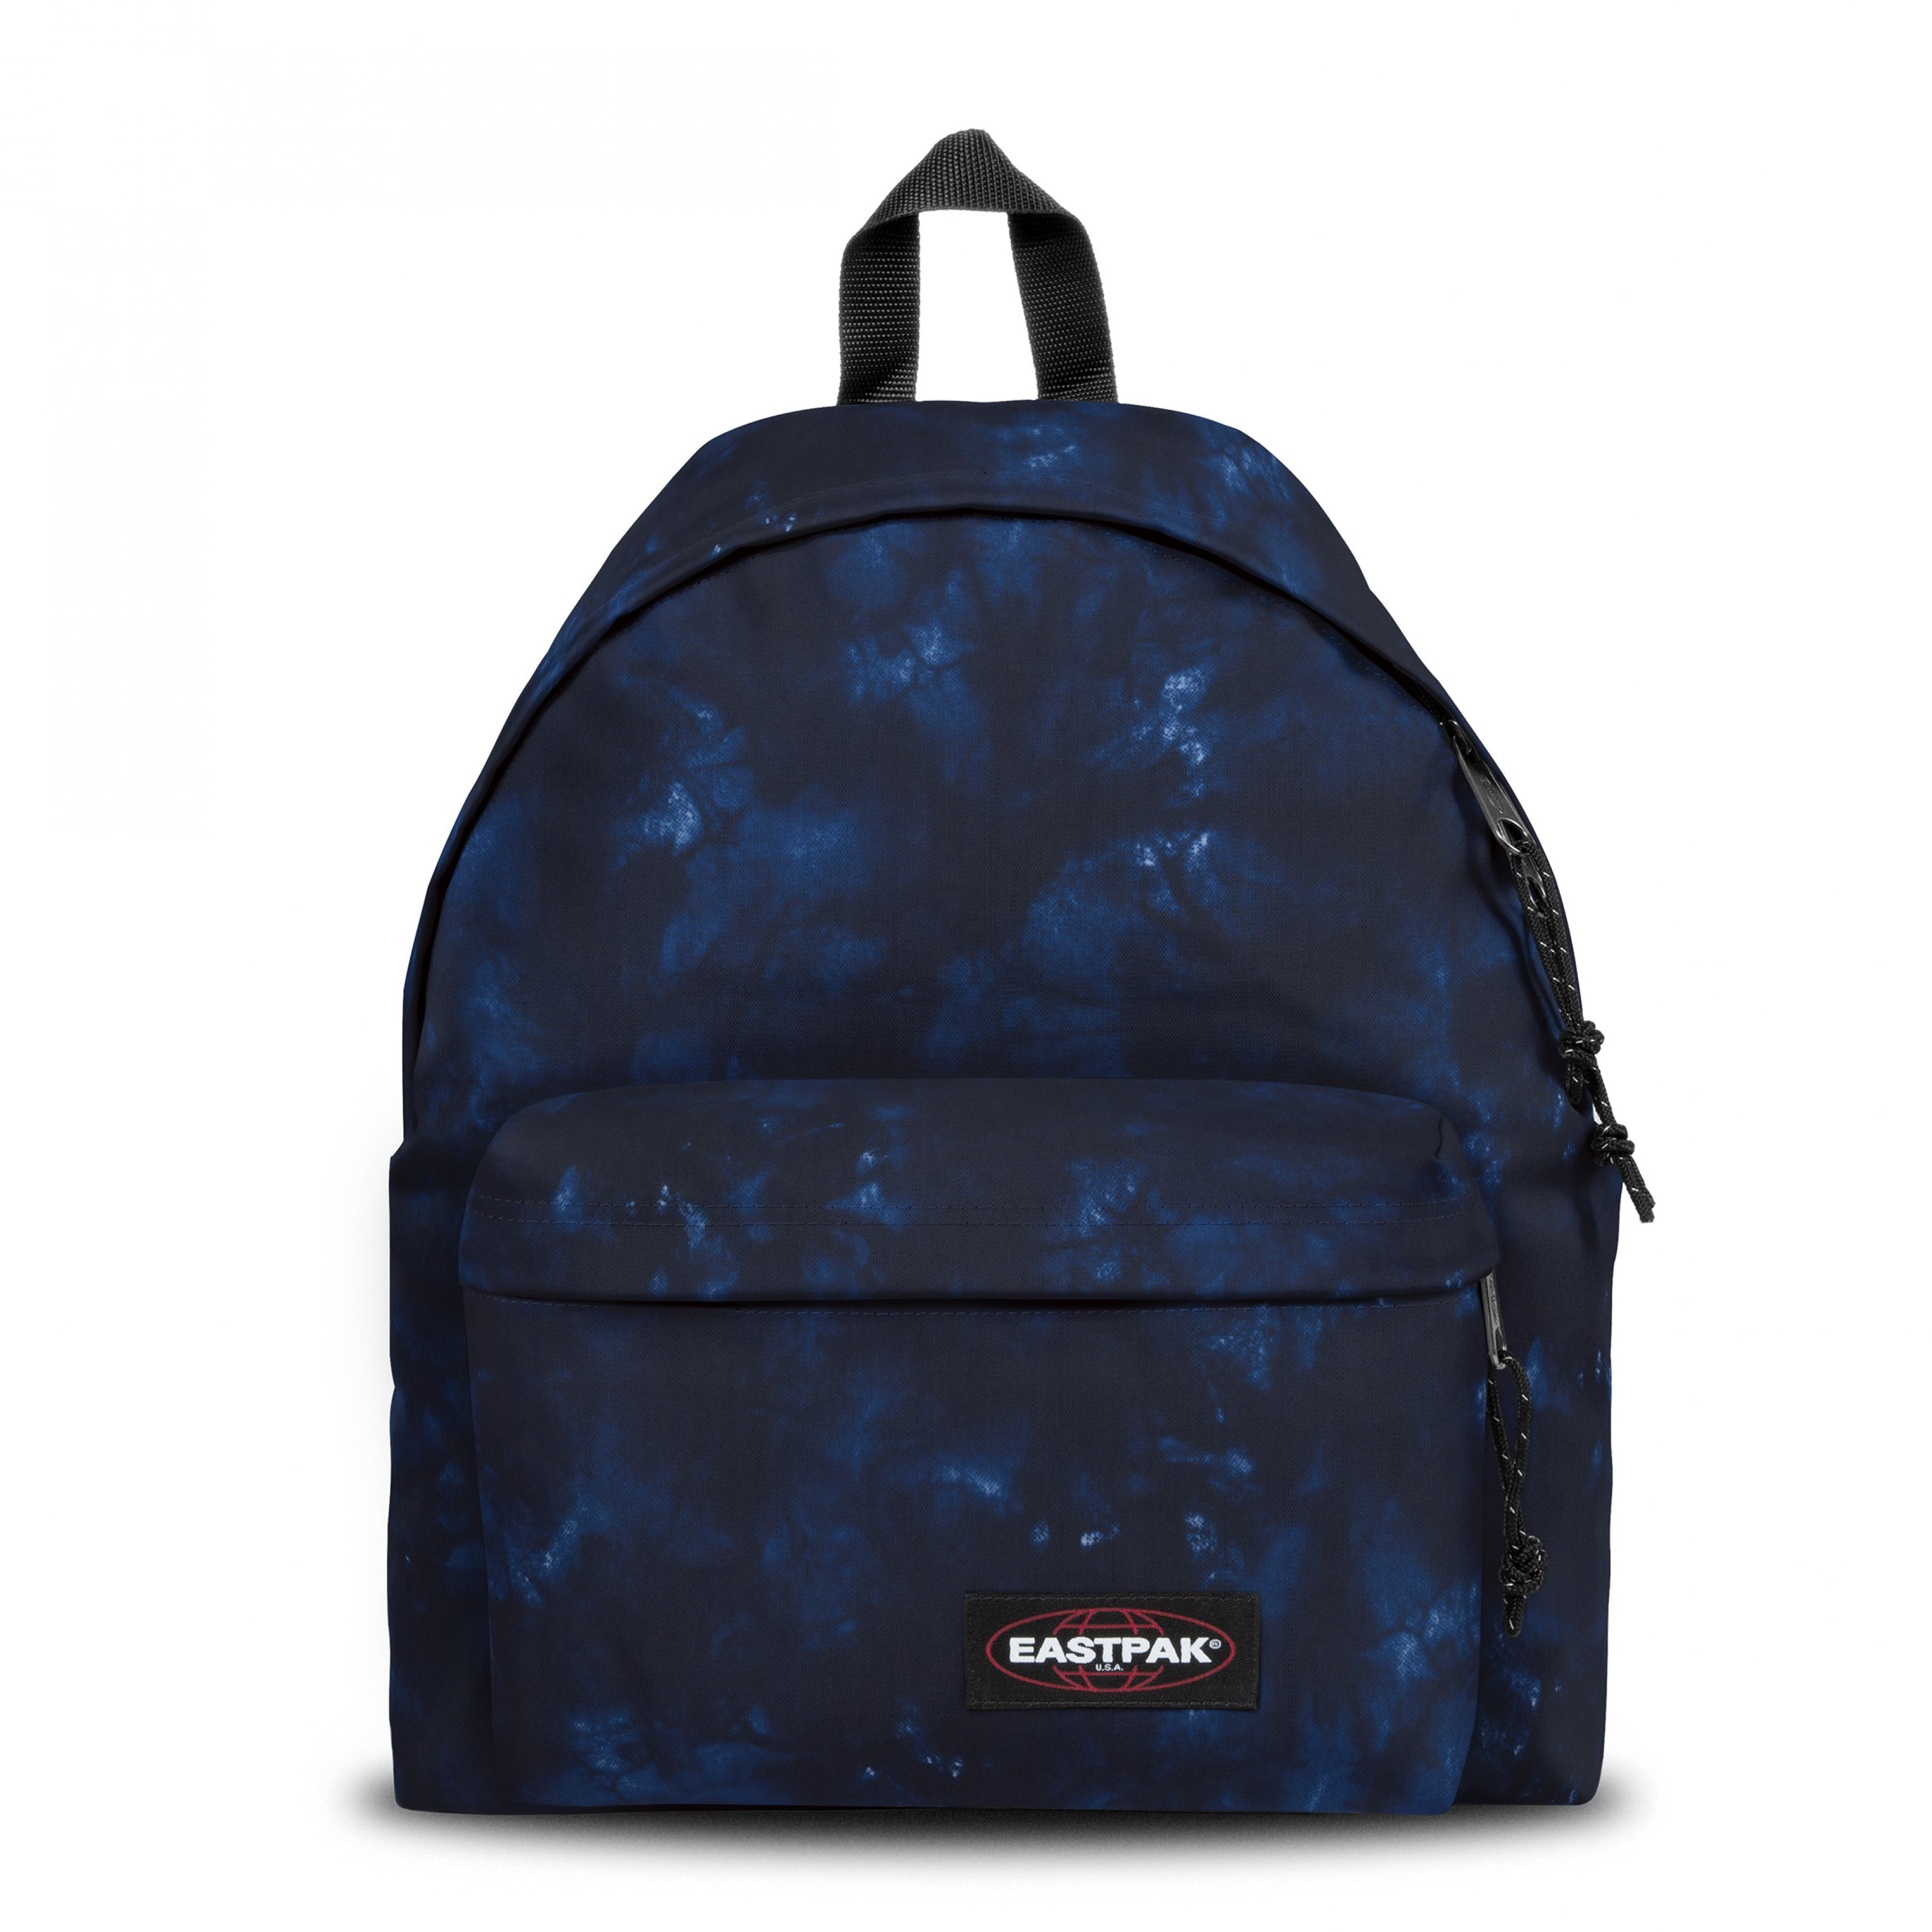 Eastpak - Padded Pak'r Camo Dye Navy Backpack, Blue, large image number 0